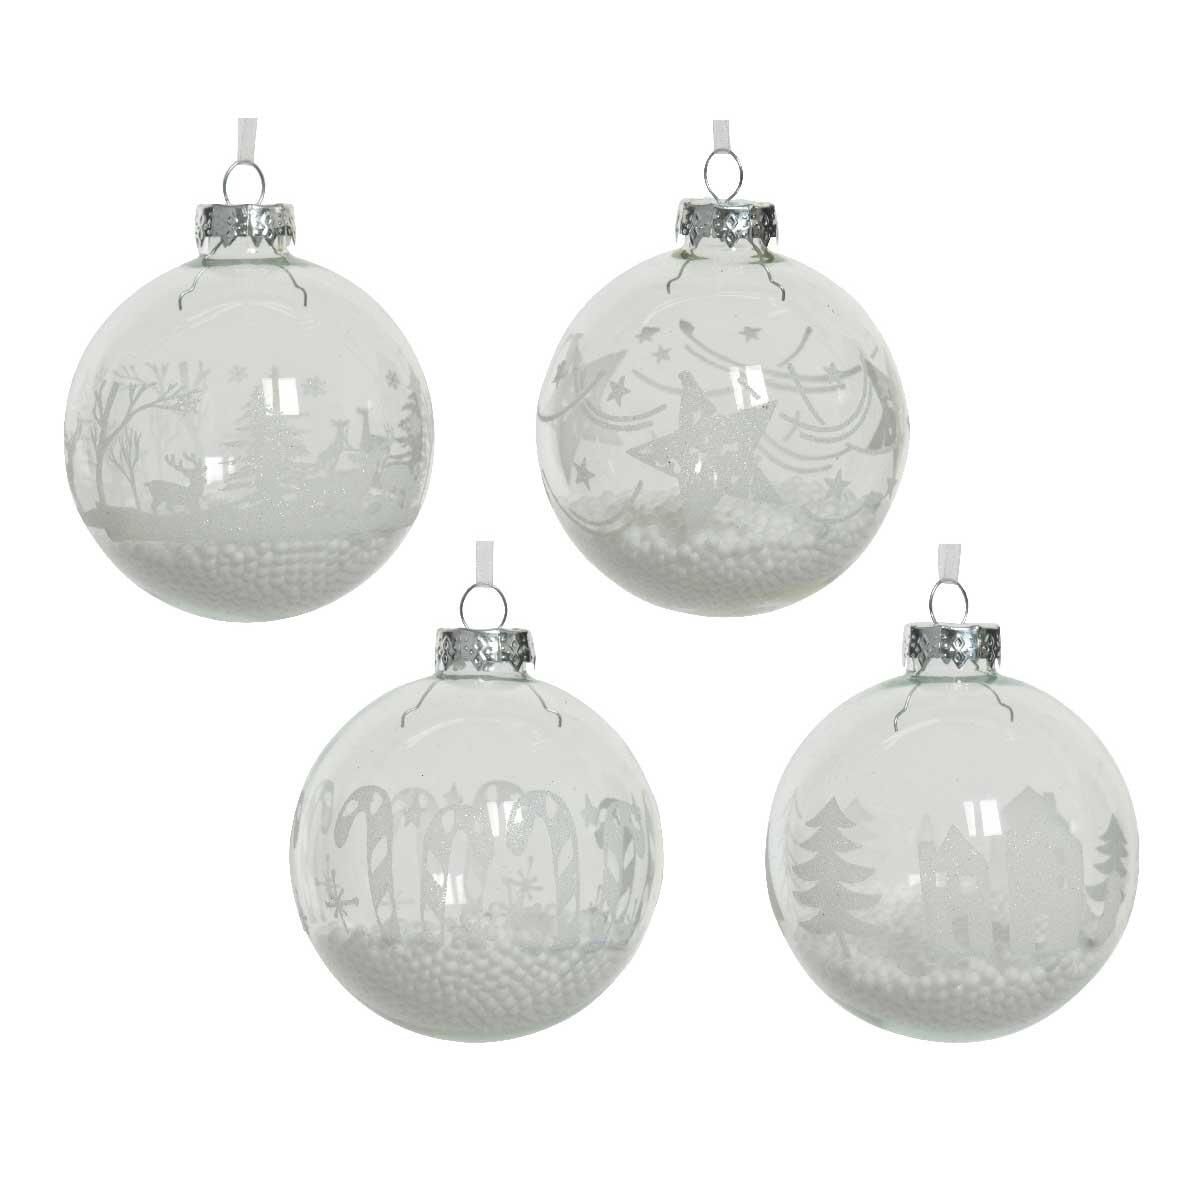 Lote de 12 bolas de Navidad en vidrio (D80 mm) Avya Transparente  1